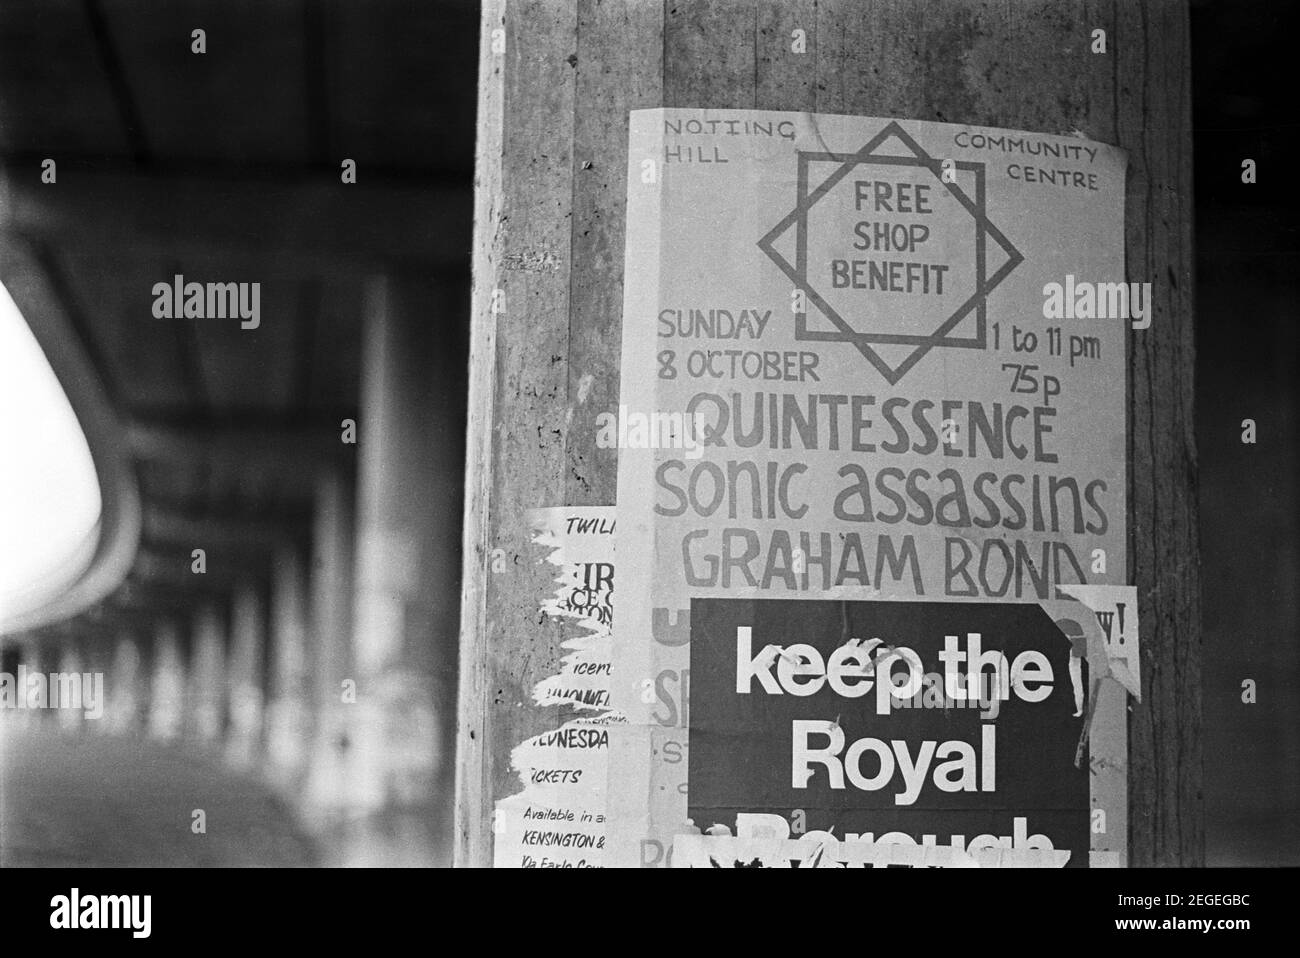 UK, West London, Notting Hill / Ladbroke Grove area, 1973. Un poster per un evento benefit di musica dal vivo (bande locali) bloccato sotto la superstrada sopraelevata Westway (A40). Foto Stock